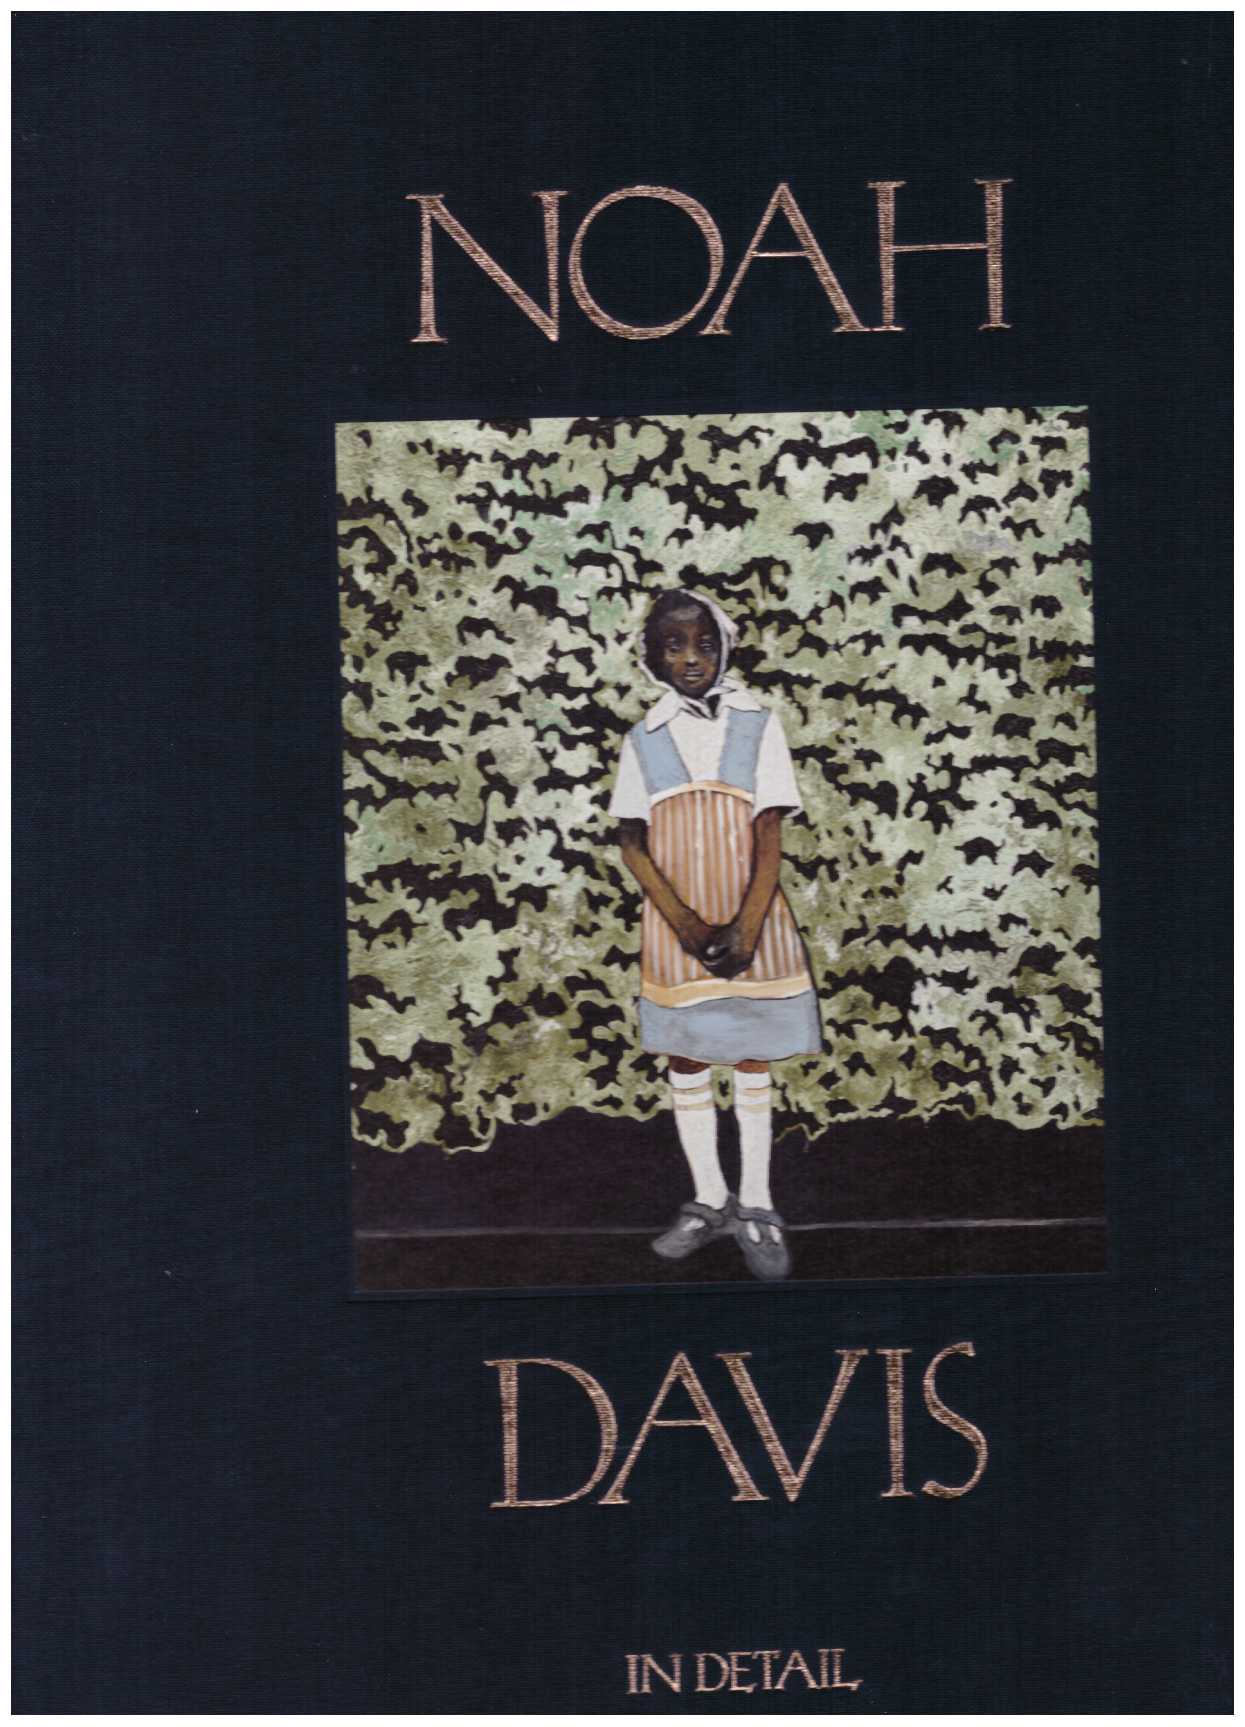 DAVIS, Noah - Noah Davis: In Detail